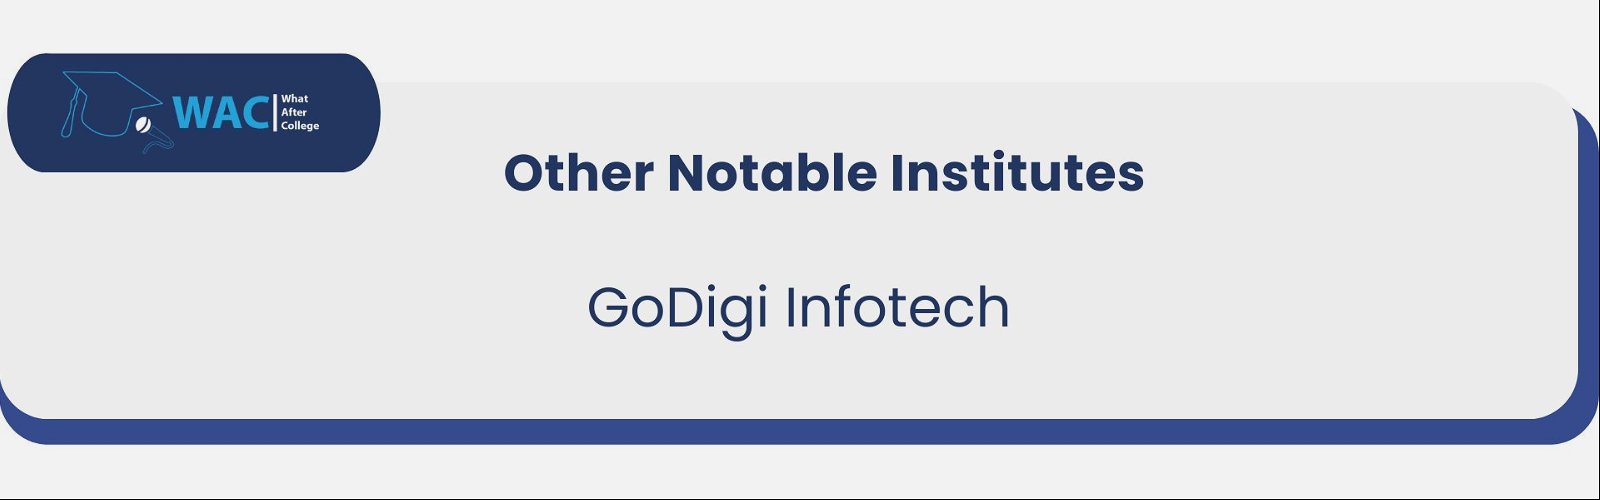 GoDigi Infotech